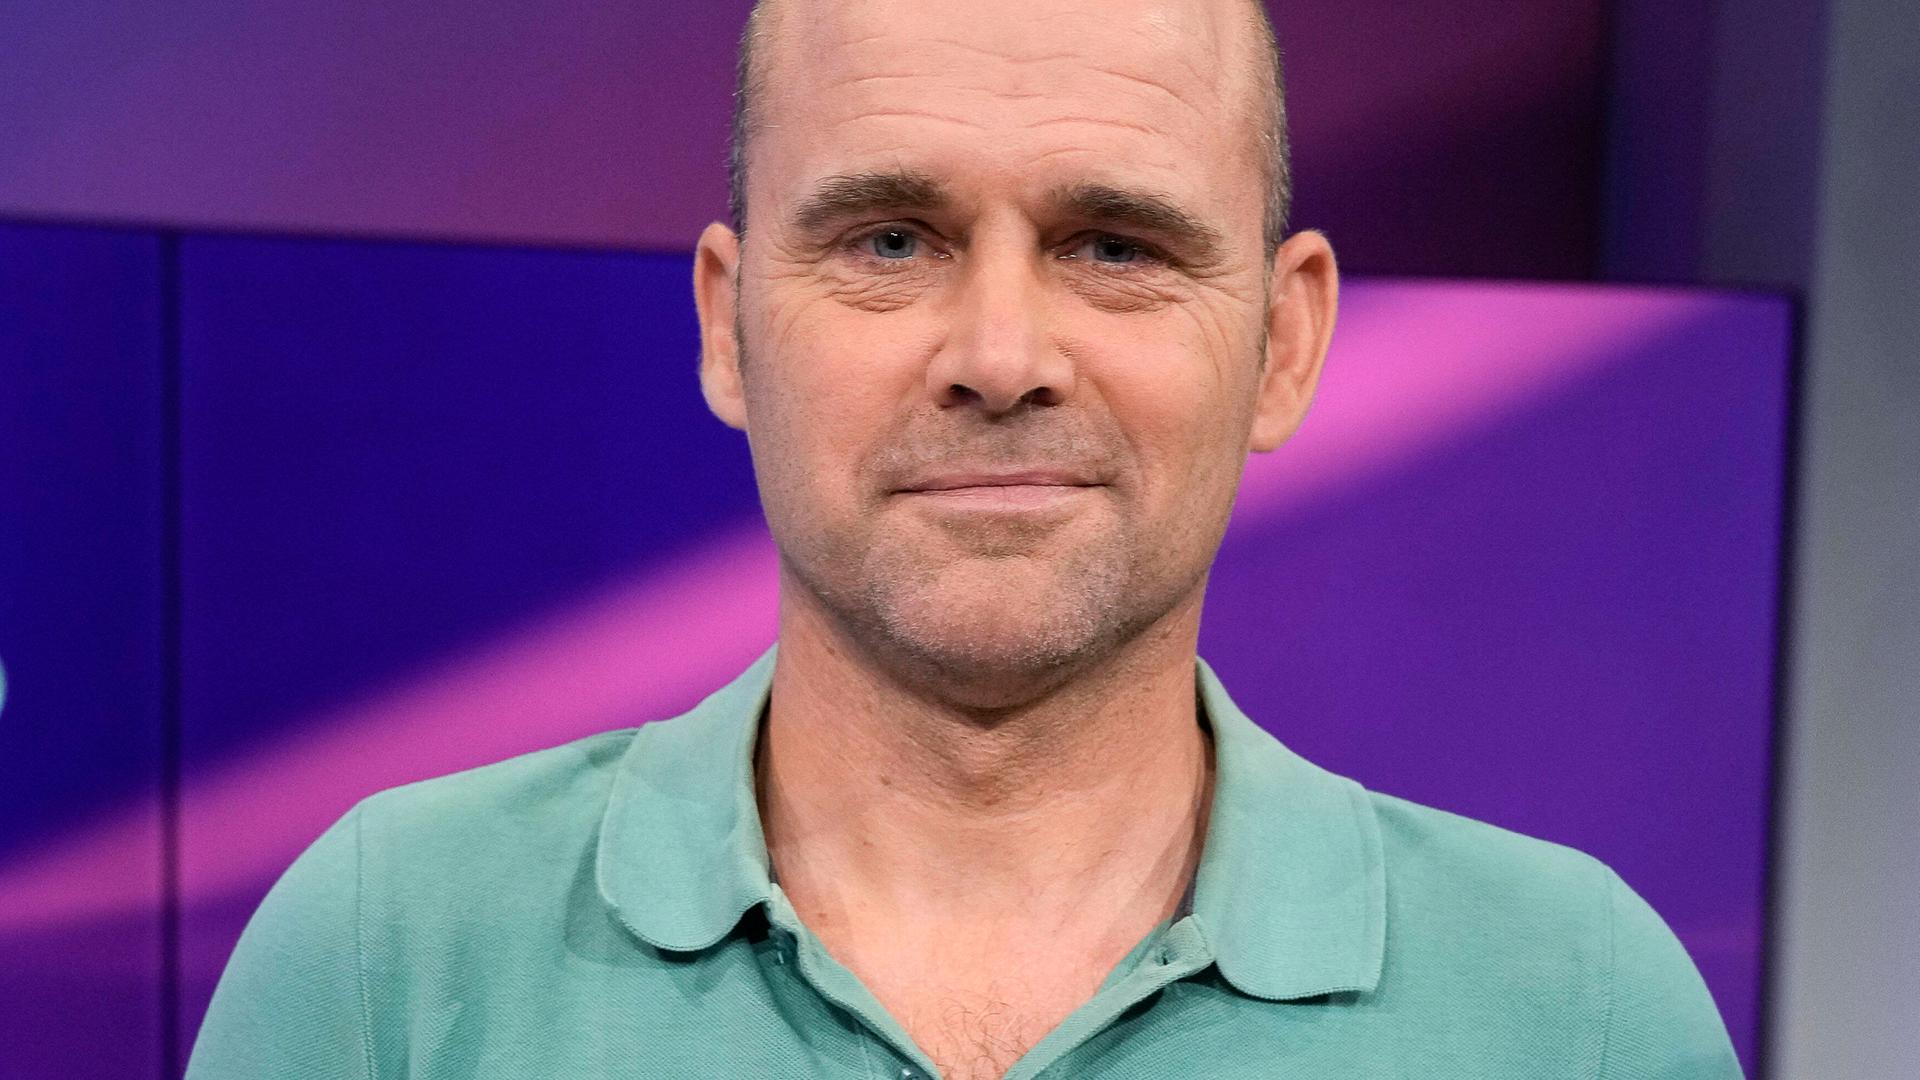 Jan Hempel als Gast in der ARD-Talkshow "maischberger" im August 2022.